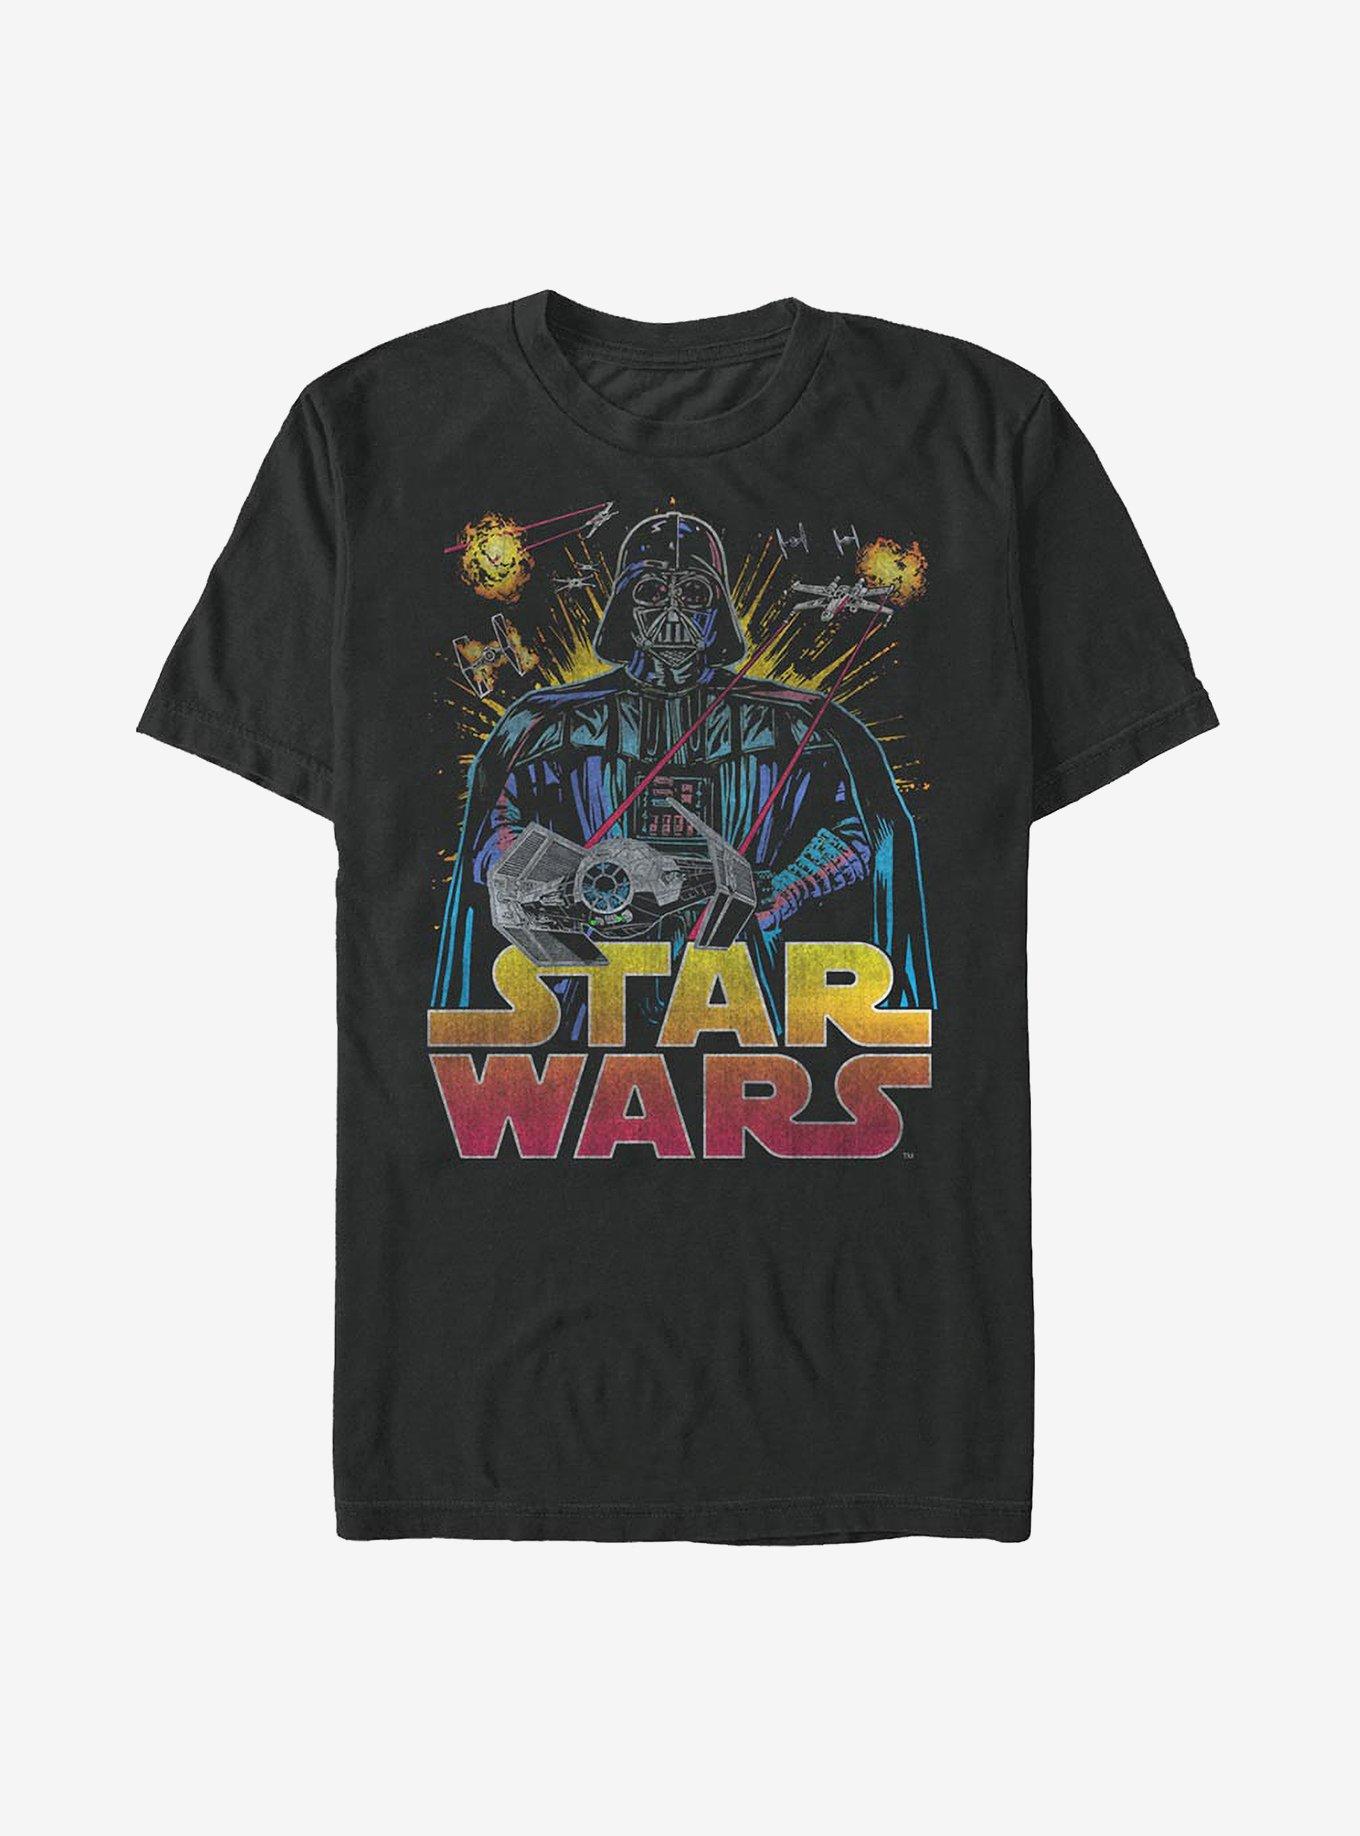 Star Wars Ancient Threat T-Shirt, BLACK, hi-res